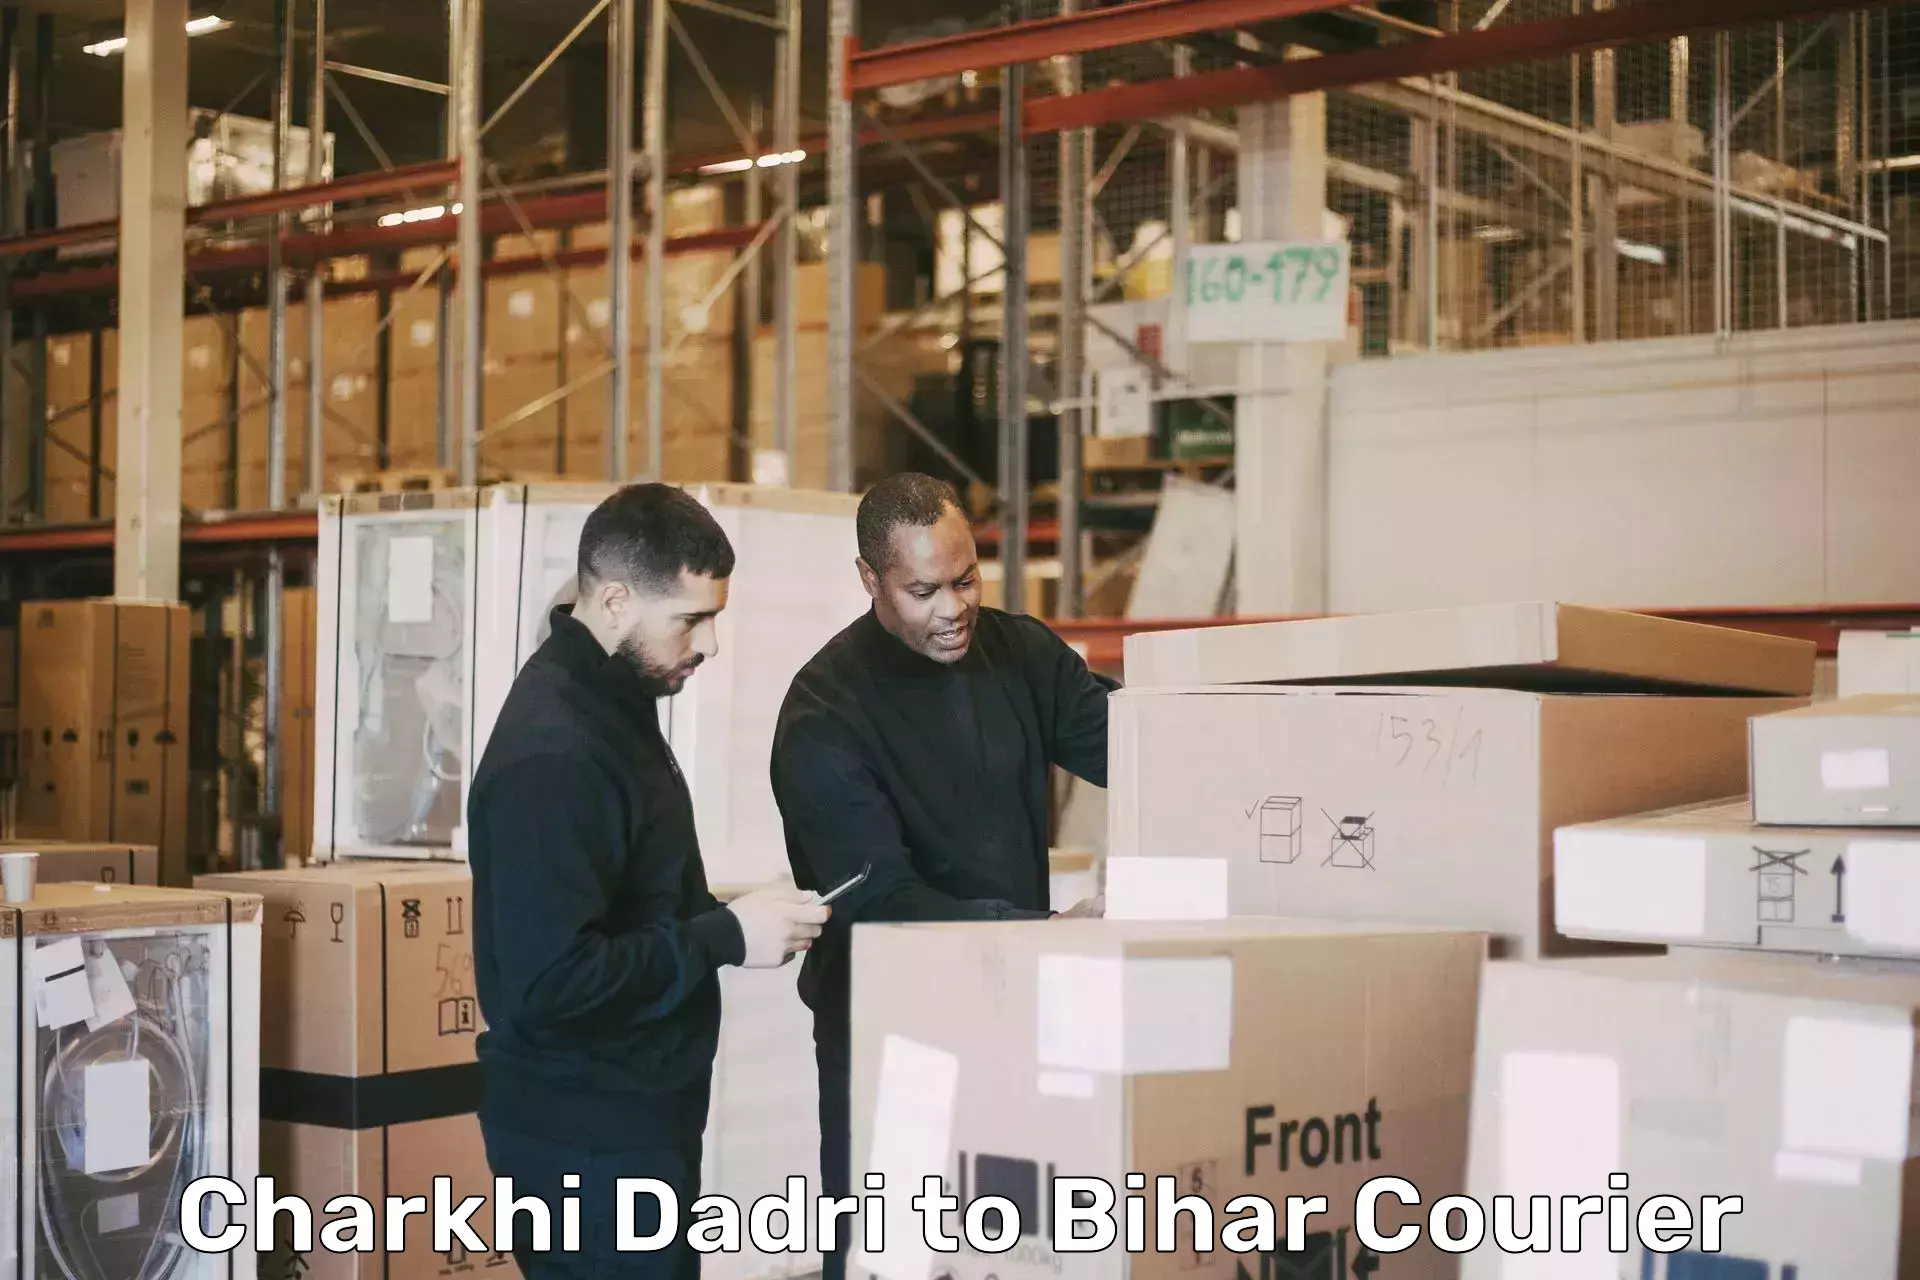 Furniture transport professionals Charkhi Dadri to Mahnar Bazar